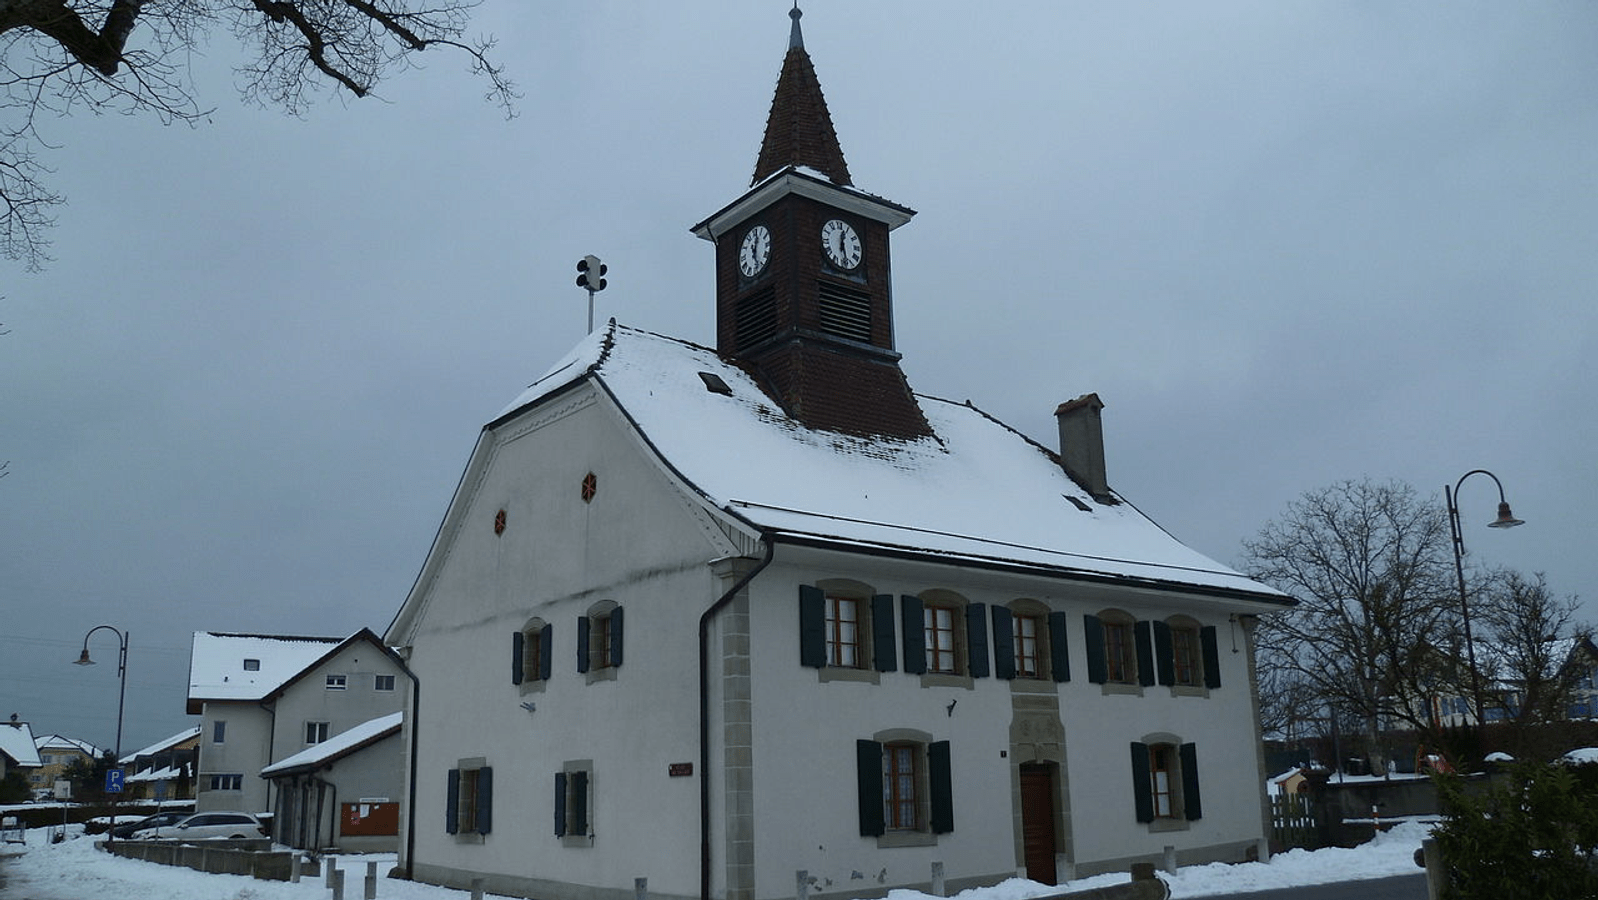 Maison de ville de Bretigny-sur-Morrens. Vaud, Switzerland